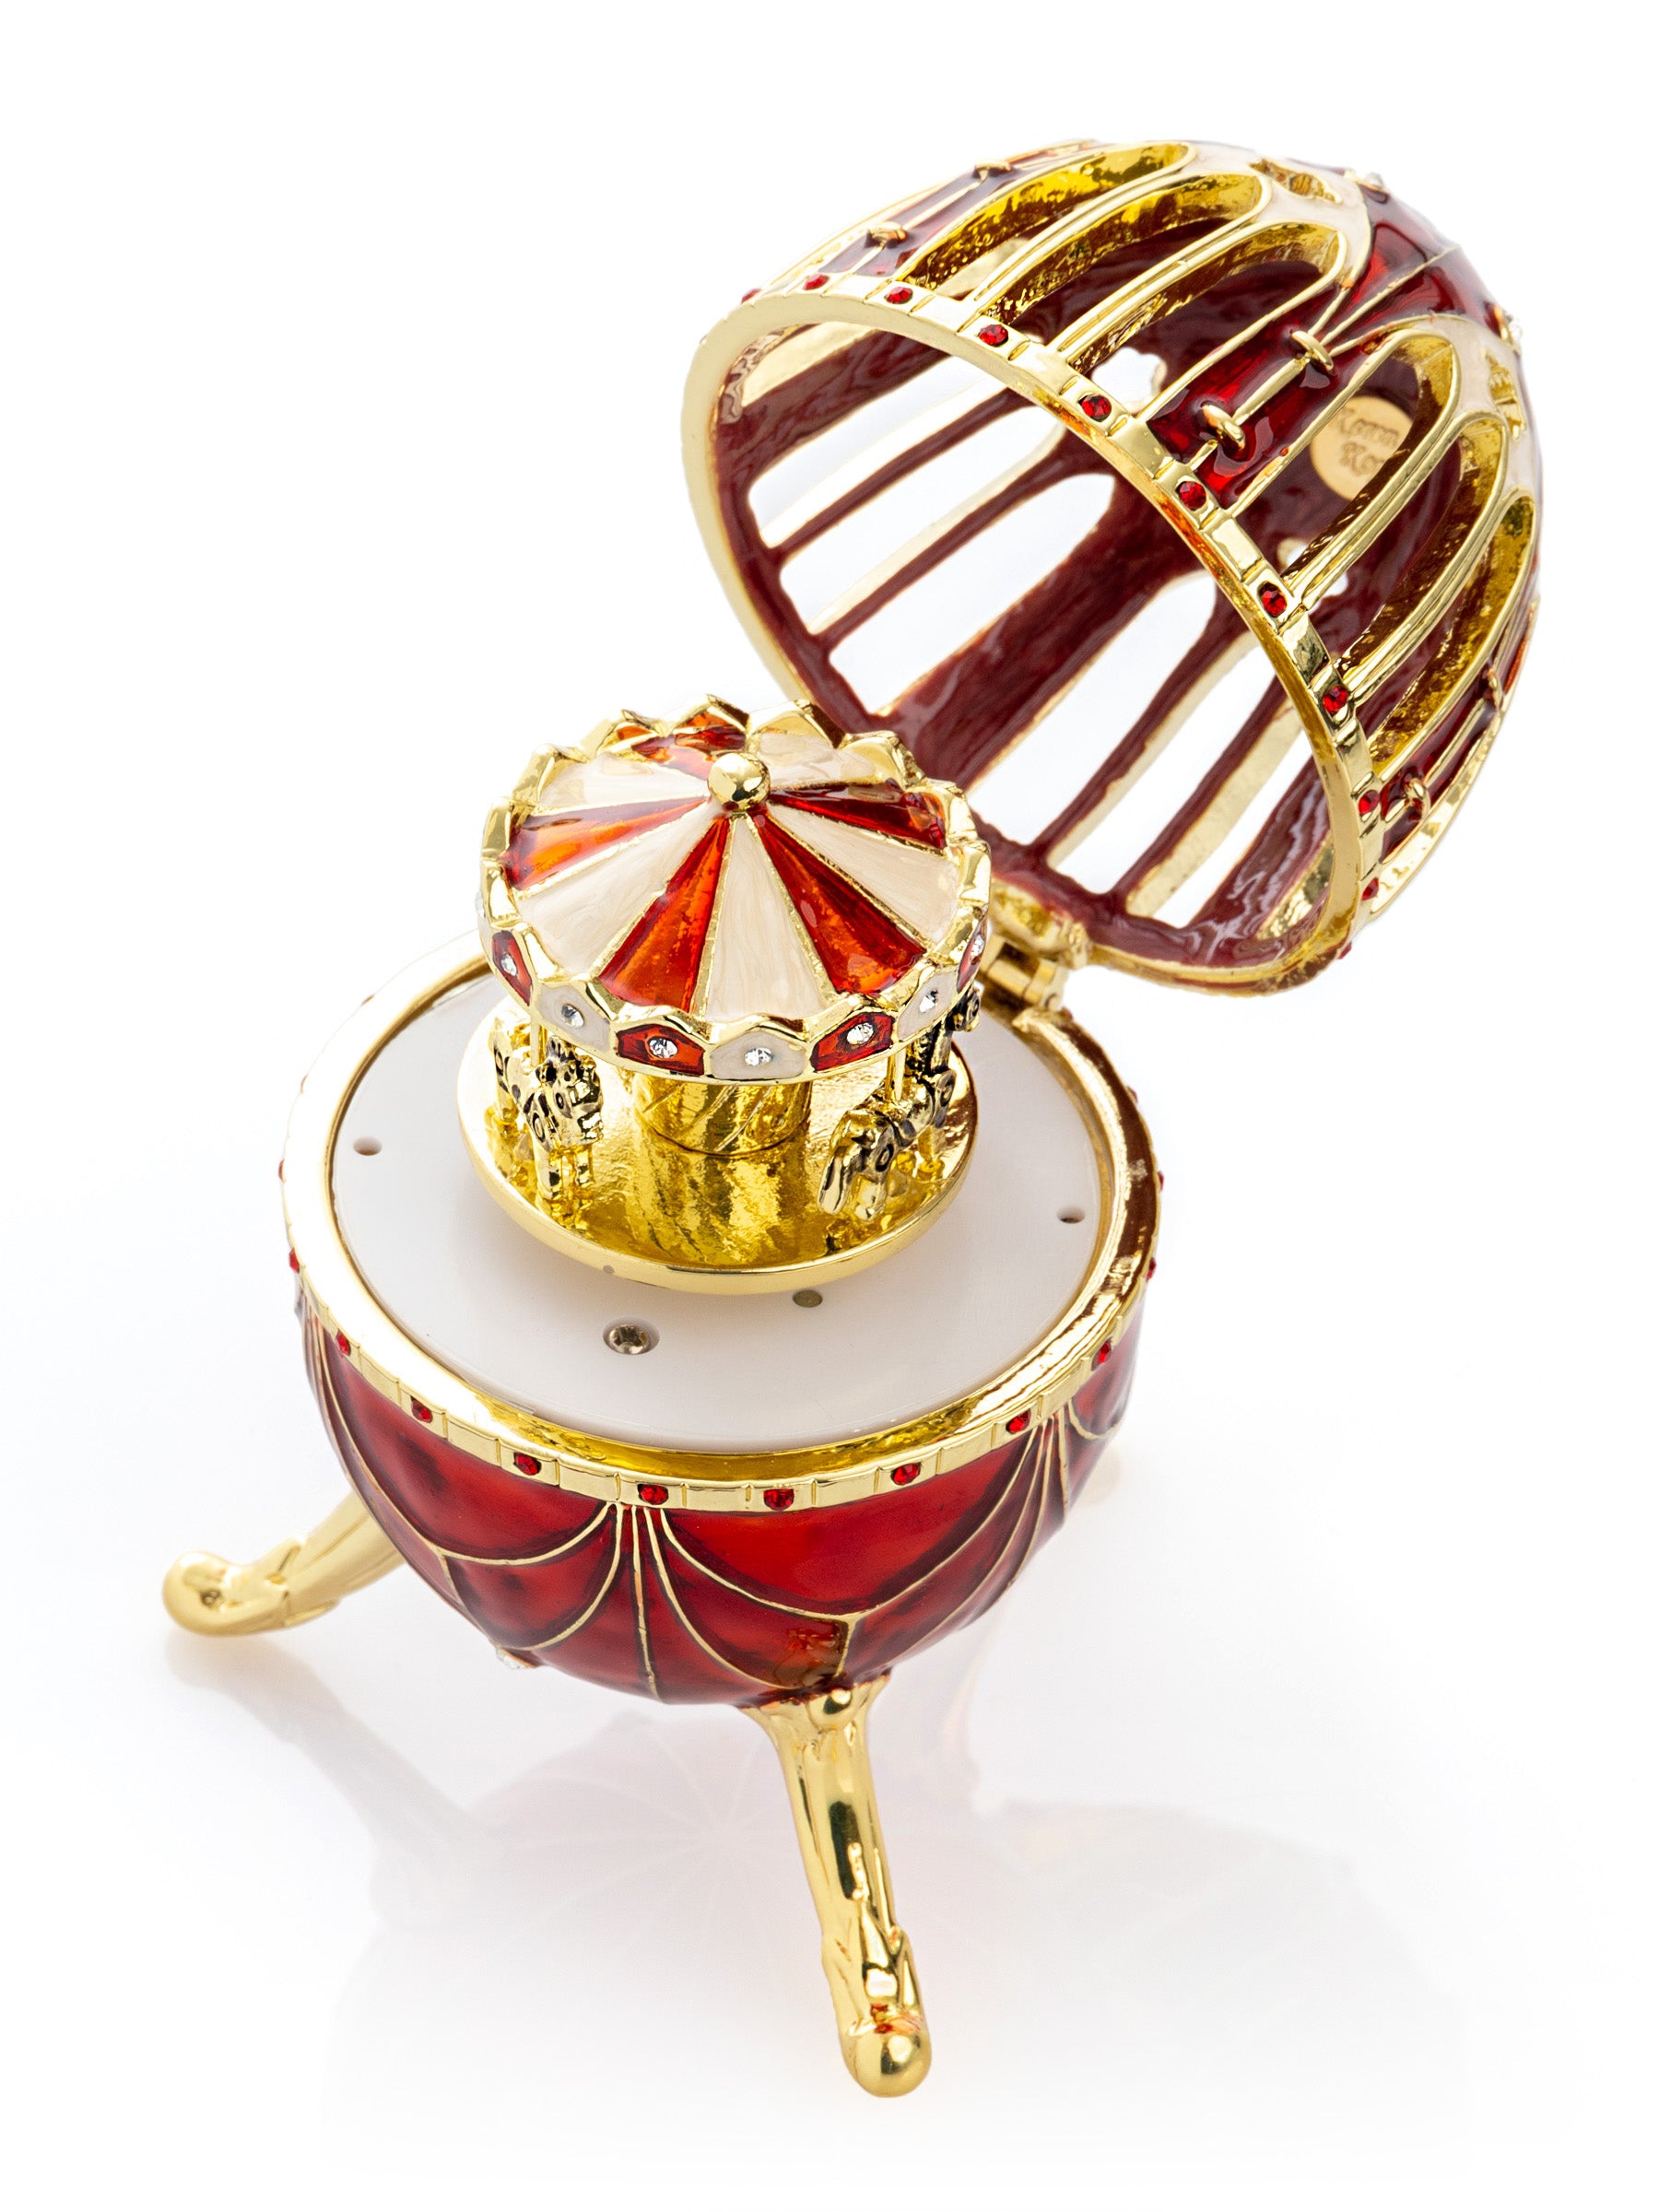 Oeuf de Fabergé rouge avec surprise de carrousel de chevaux à l'intérieur